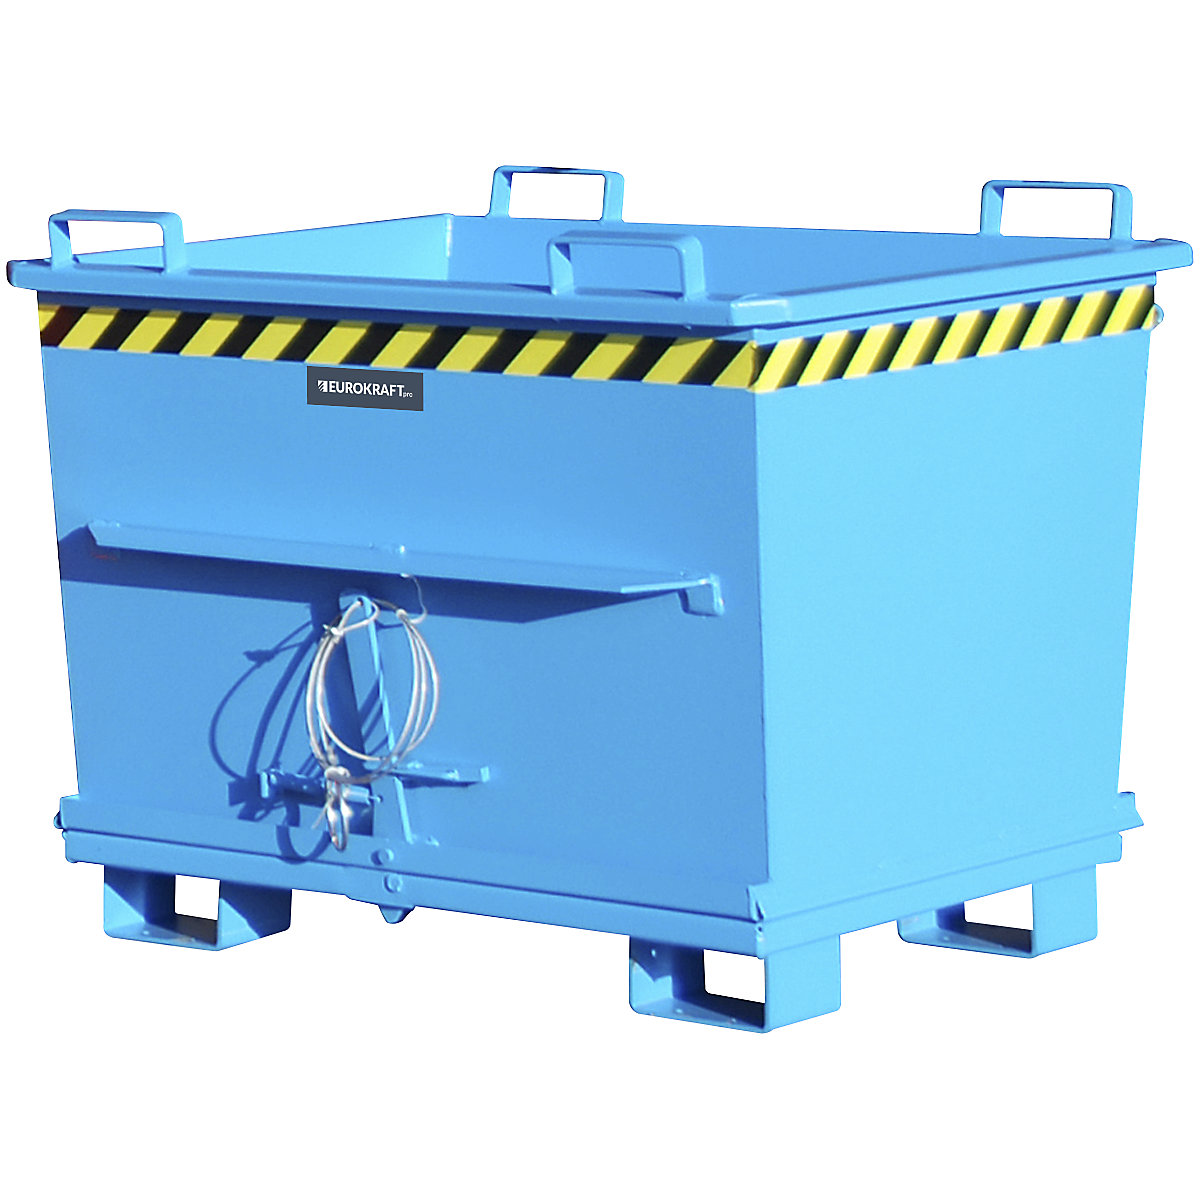 Stožčast zabojnik s preklopnim dnom – eurokraft pro, prostornina 0,7 m³, nosilnost 1500 kg, modra RAL 5012-13